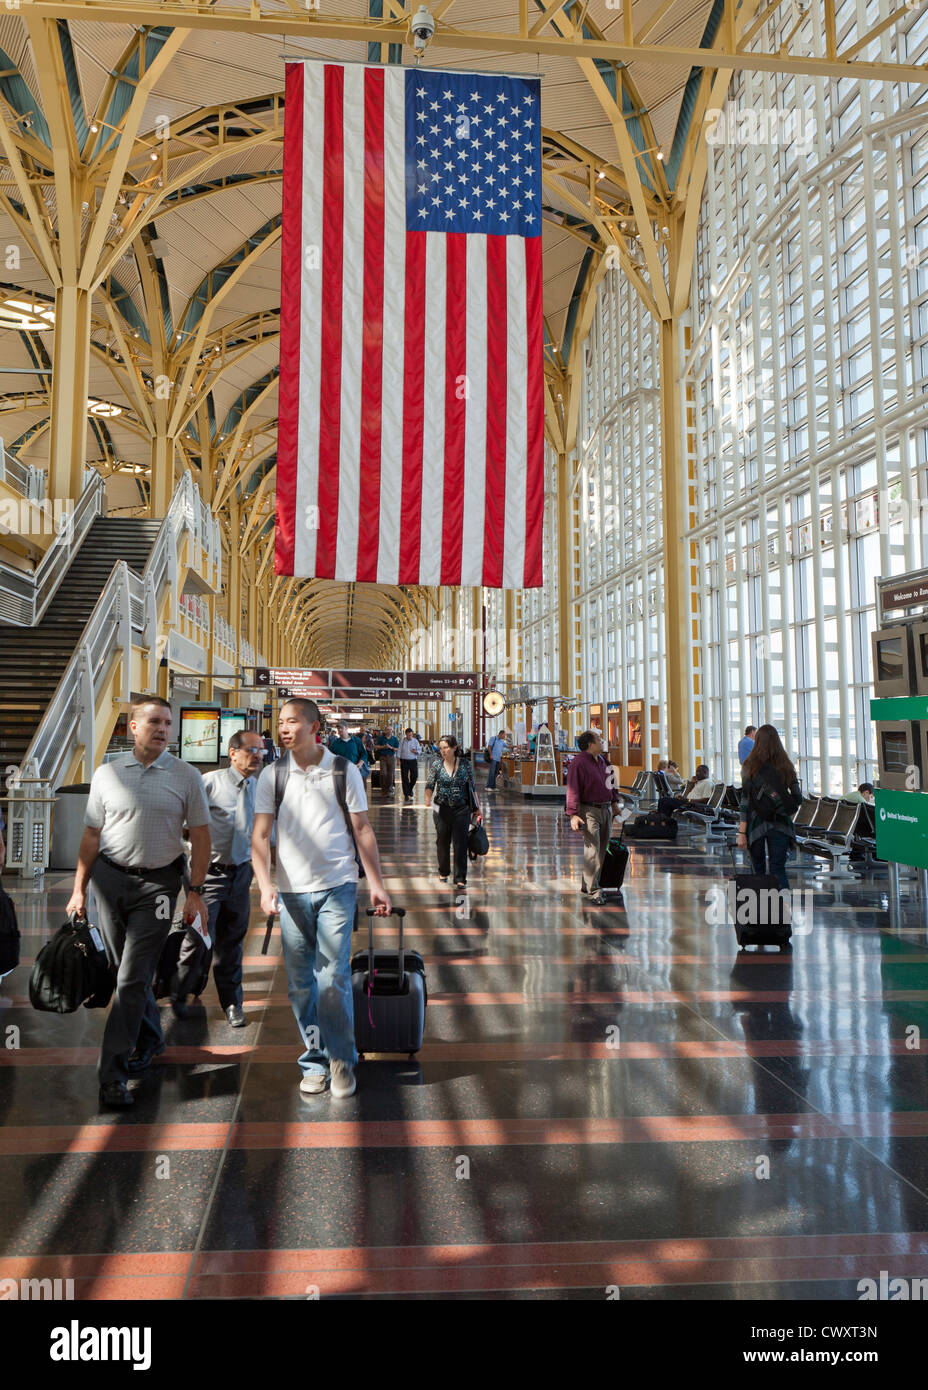 Ronald Reagan National Airport terminal Interieur Stockfoto